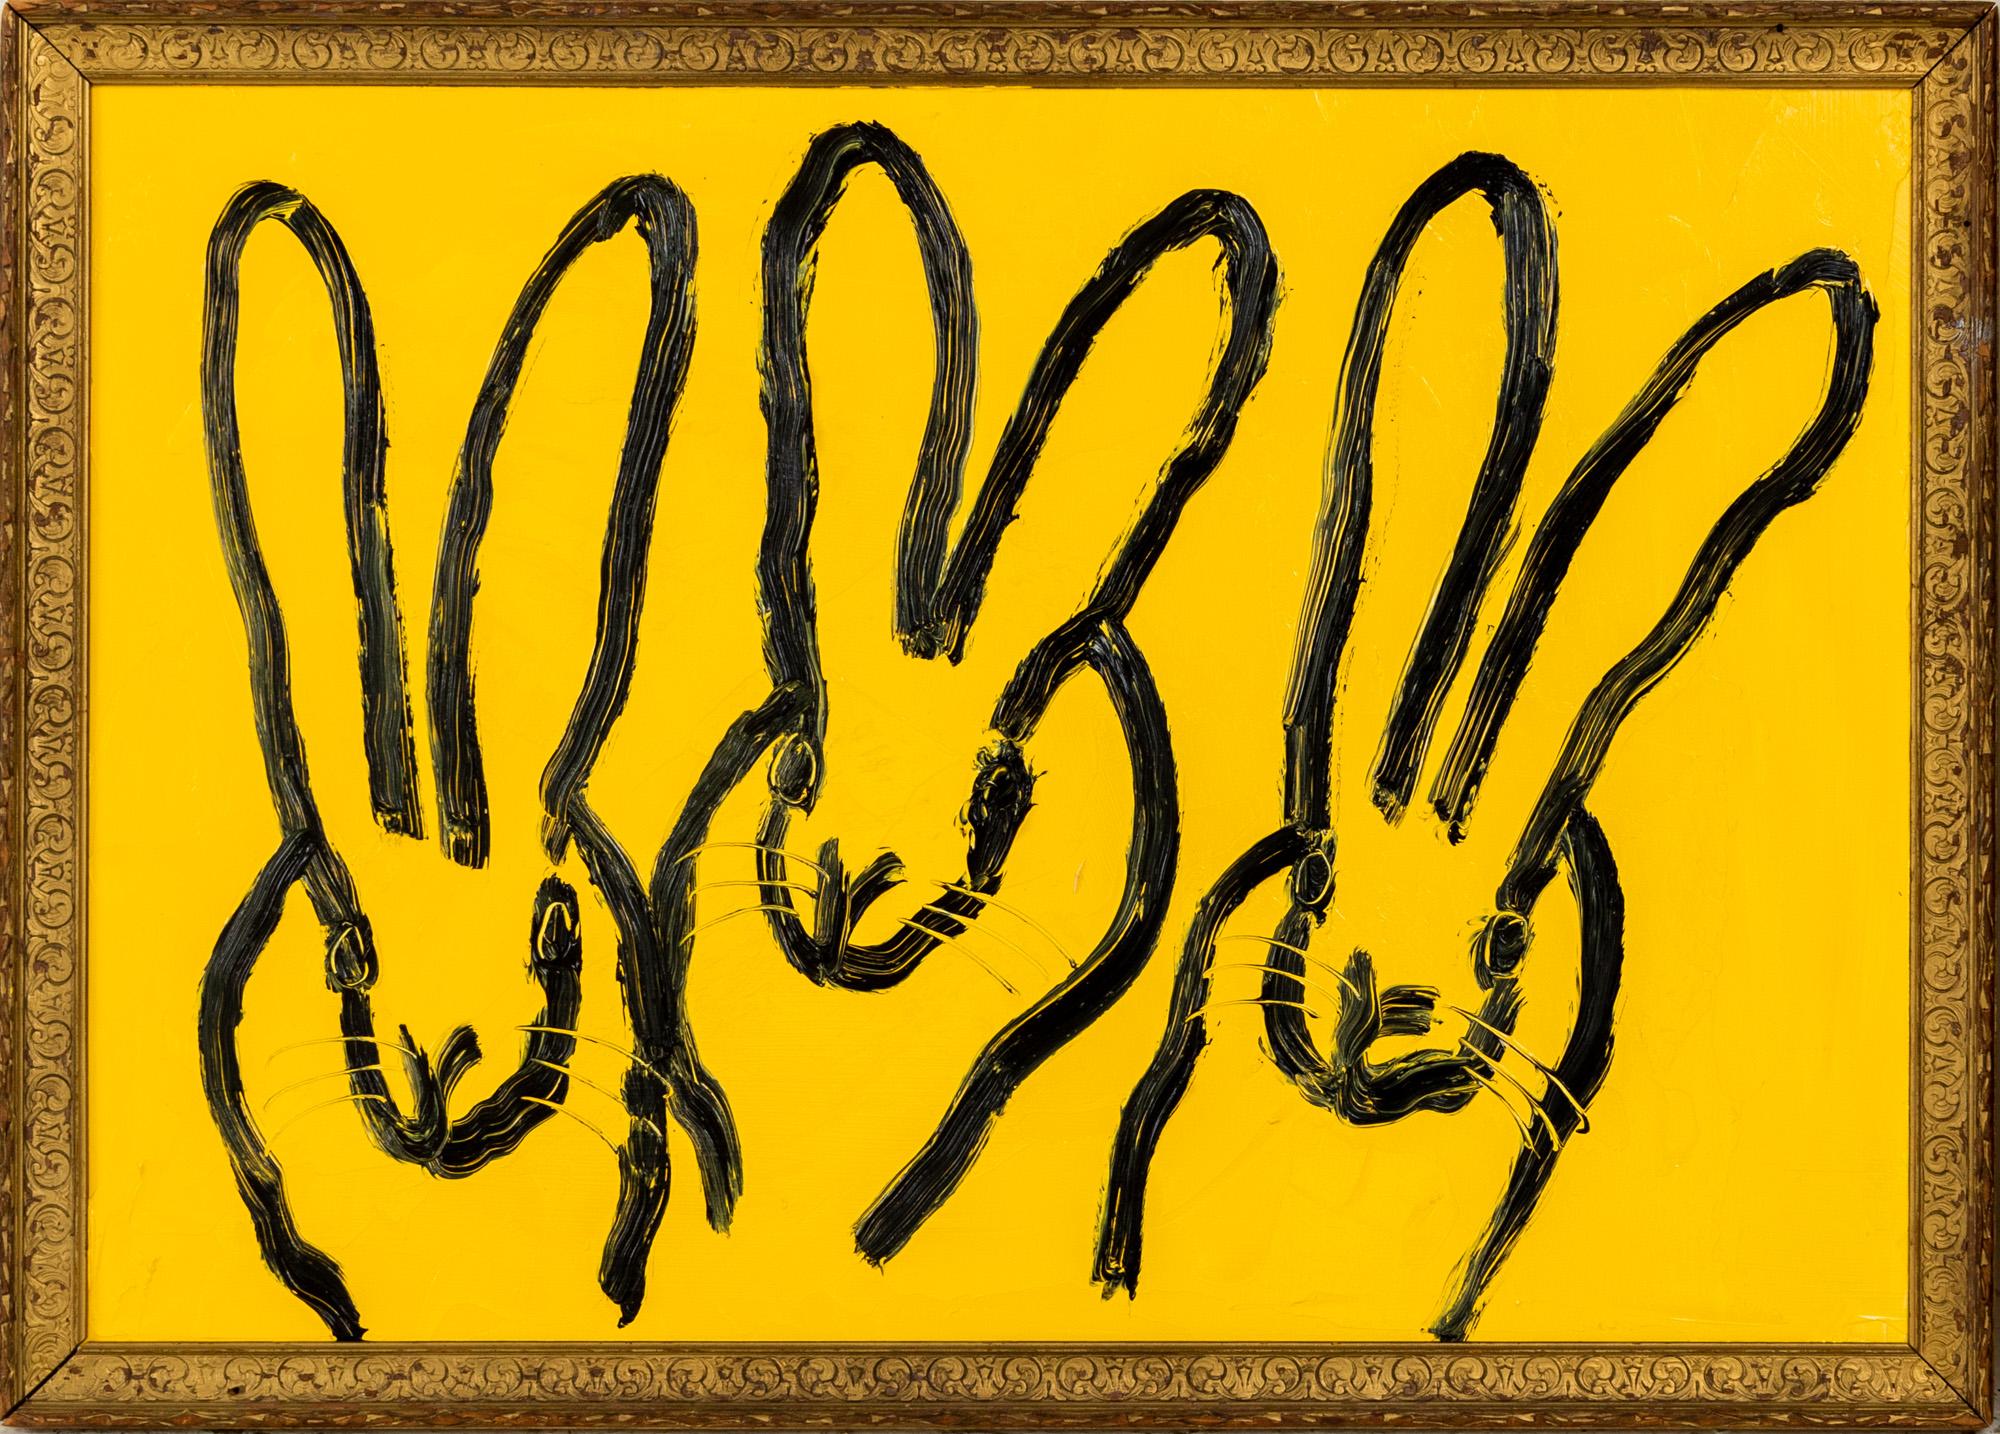 "3 Play Monday" ist ein gerahmtes Ölgemälde auf Holz von Hunt Slonem, das einen Kaninchenstall vor einem leuchtend gelben Hintergrund zeigt. 

Dieses Werk ist in einem antiken Rahmen gefasst, der vom Künstler für dieses Gemälde handverlesen wurde.